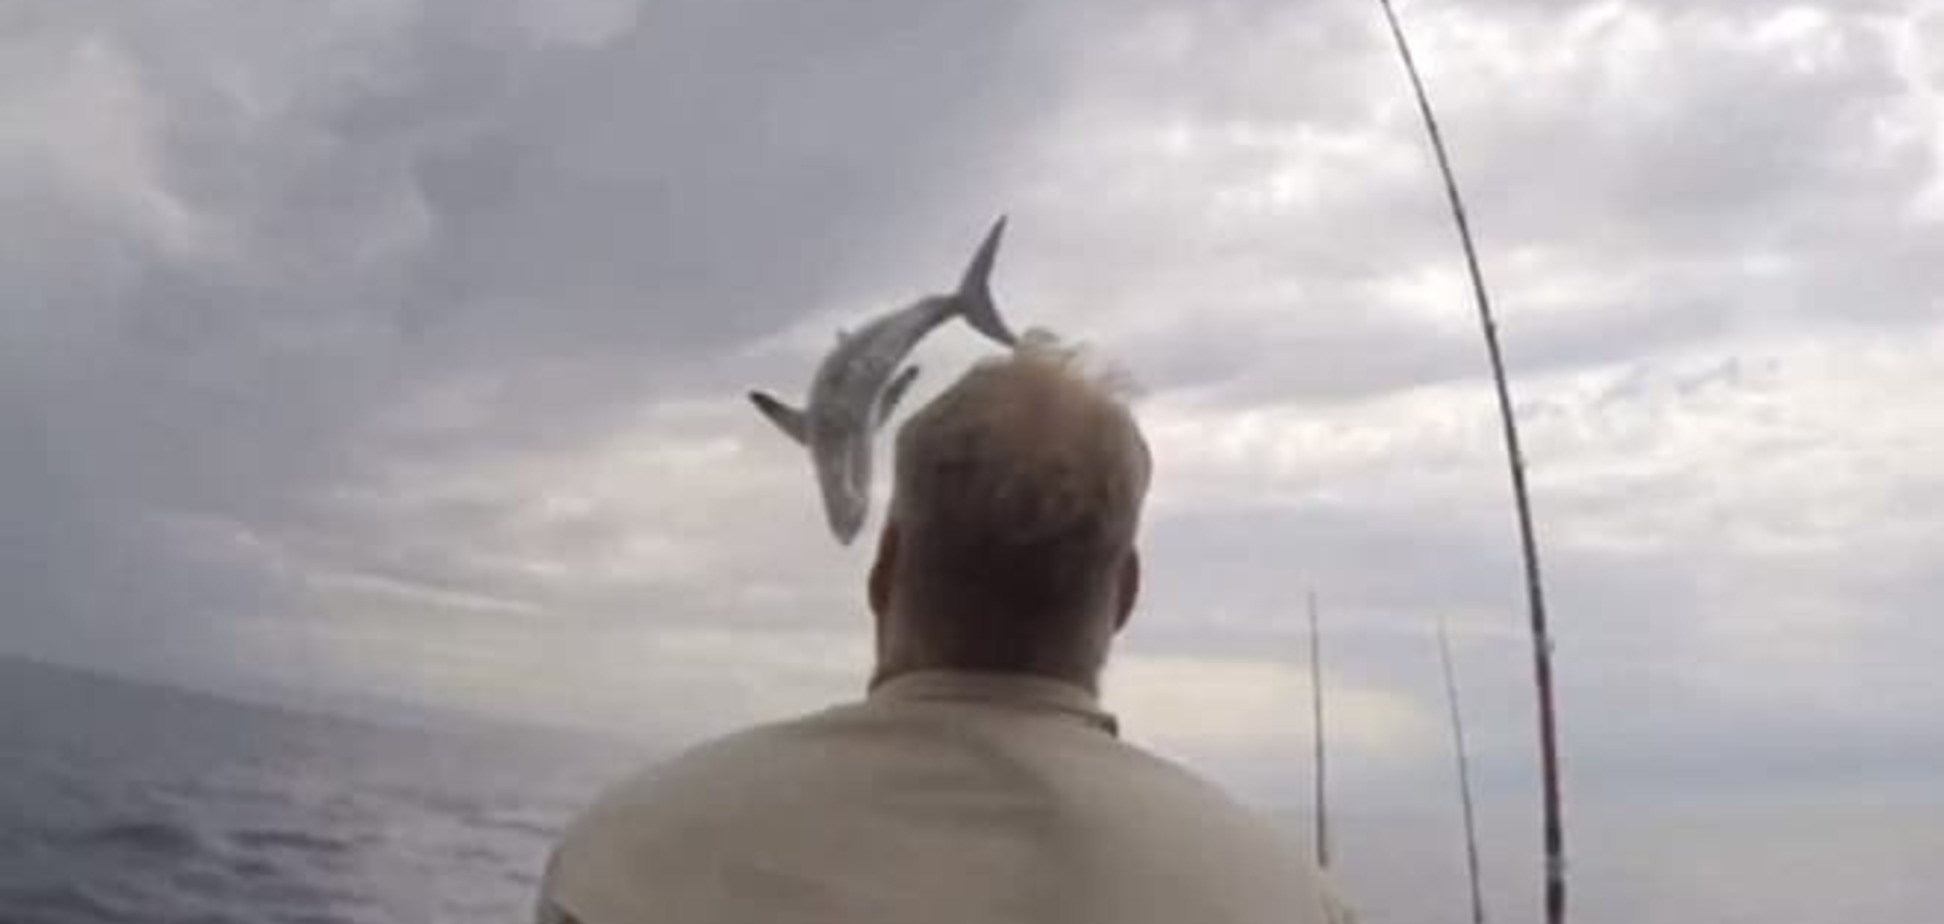 Акула, яка вистрибнула з води, налякала рибалок: відеофакт